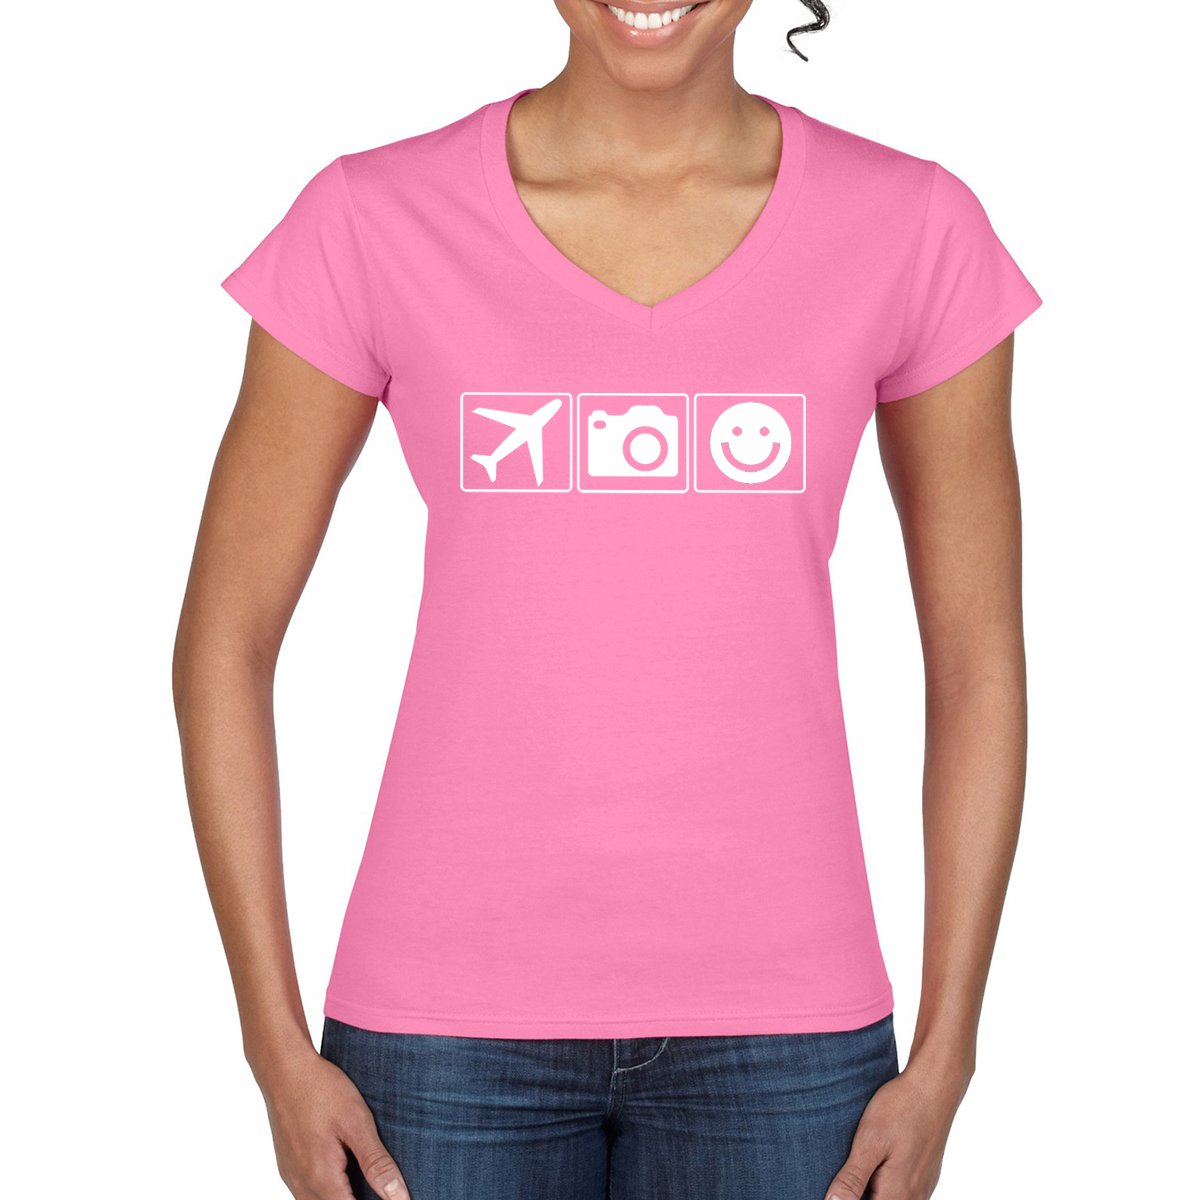 PLANE CAMERA SMILE Women's V-Neck T-Shirt